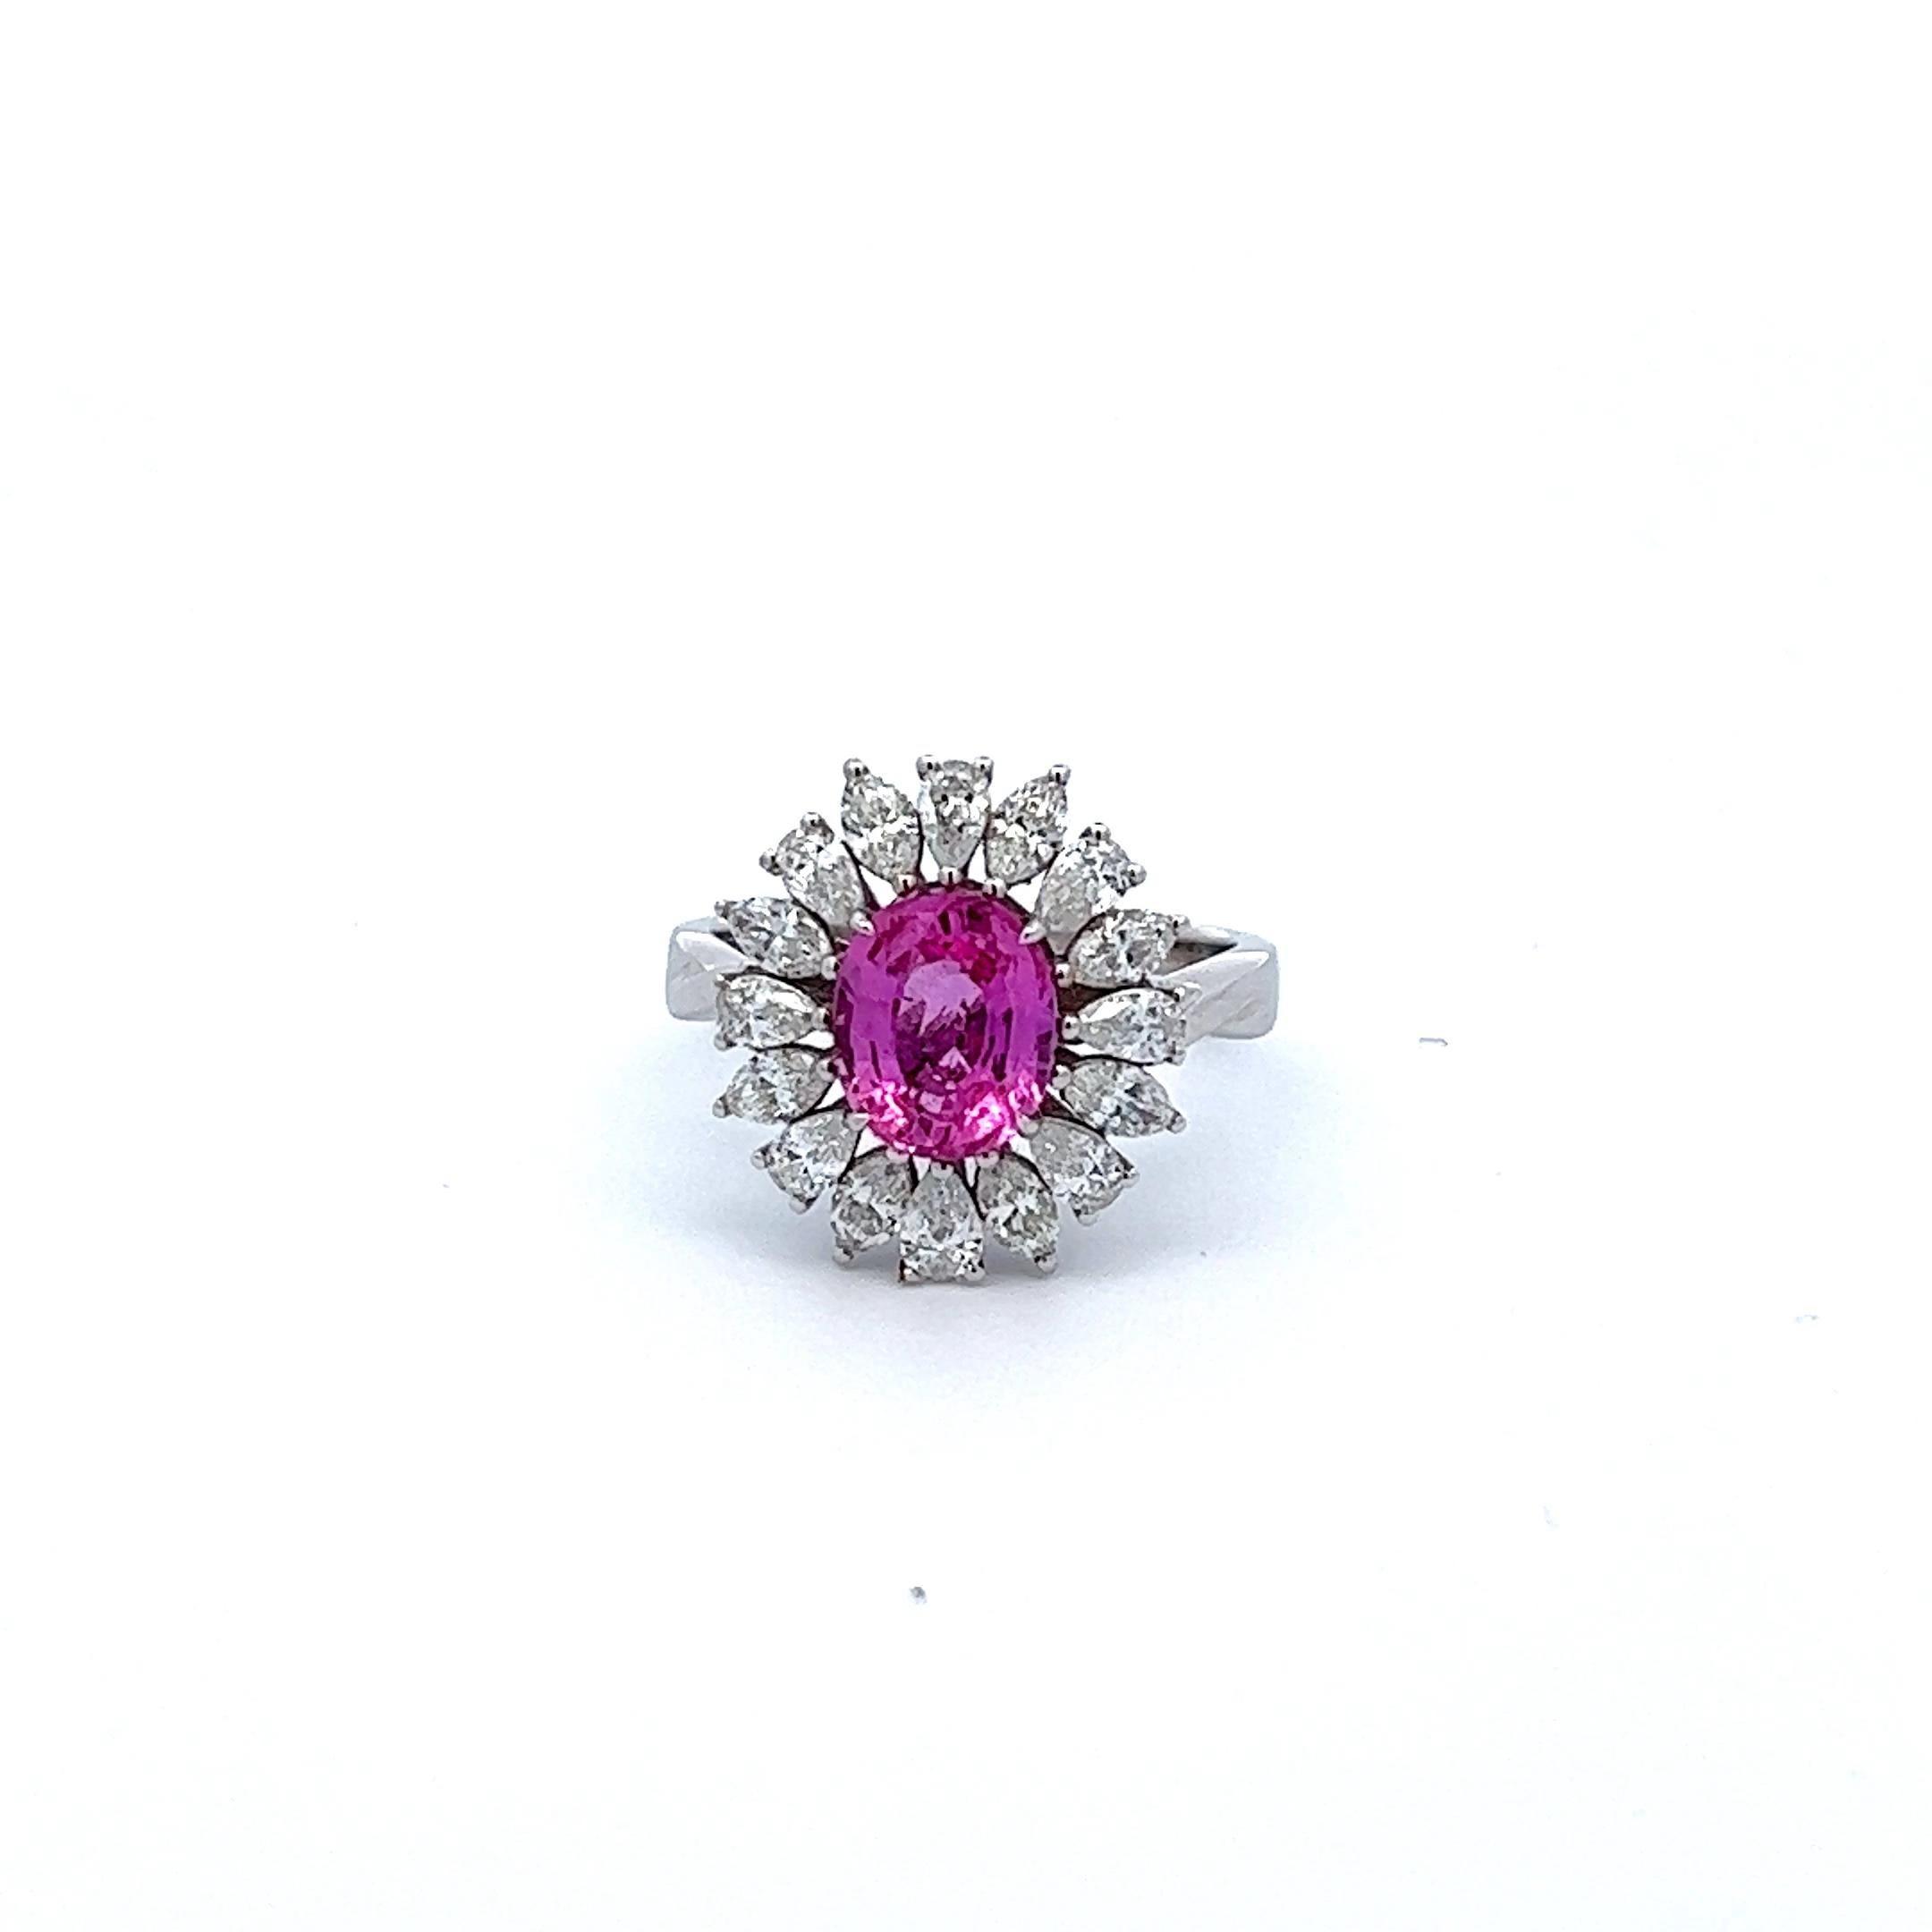 Der Cherry Blossom Pink Sapphire and Diamond Ring ist ein atemberaubendes Schmuckstück, das von der Schönheit und Anmut der japanischen Kirschblüte inspiriert ist. Dieser exquisite Ring ist mit einem seltenen, natürlichen ovalen rosa Saphir von 2,27